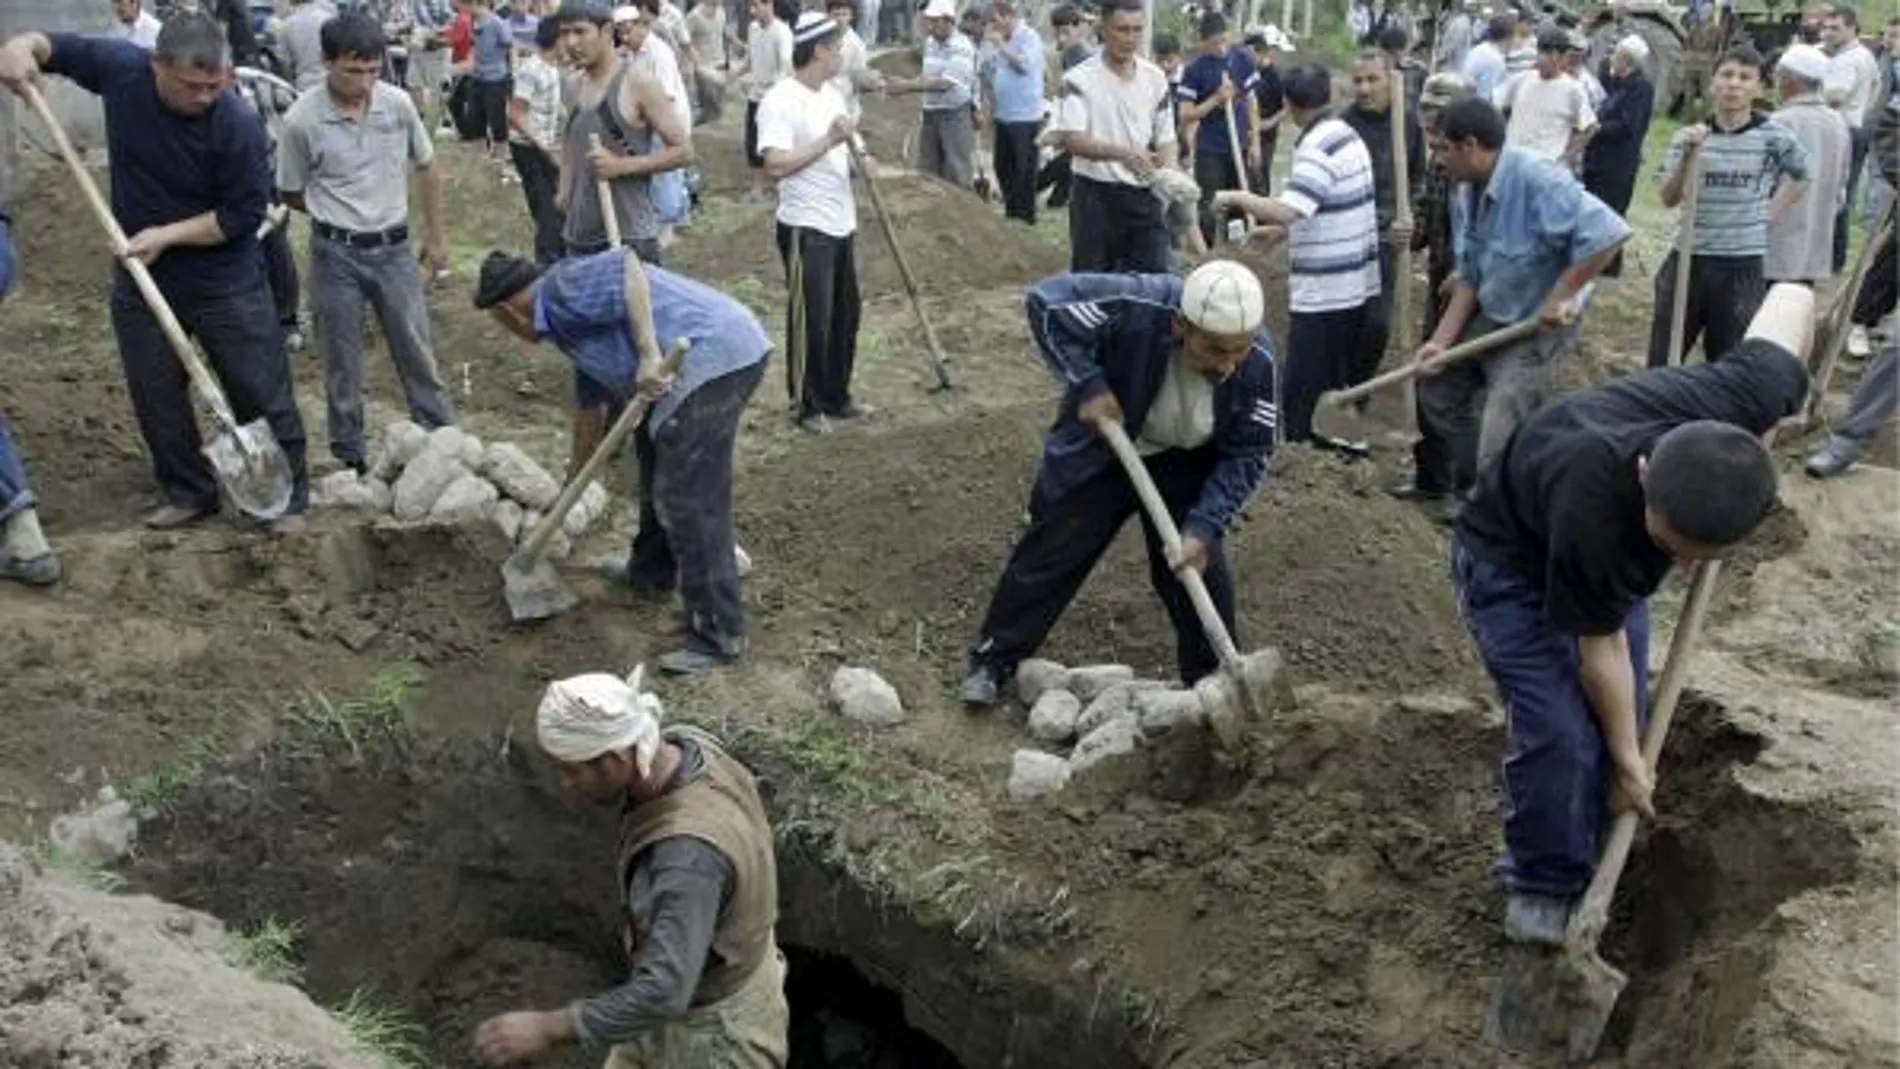 Uzbekos cavan fosas para enterrar a los muertos en los enfrentamientos entre kirguises y uzbekos en la ciudad uzbeka de Osh